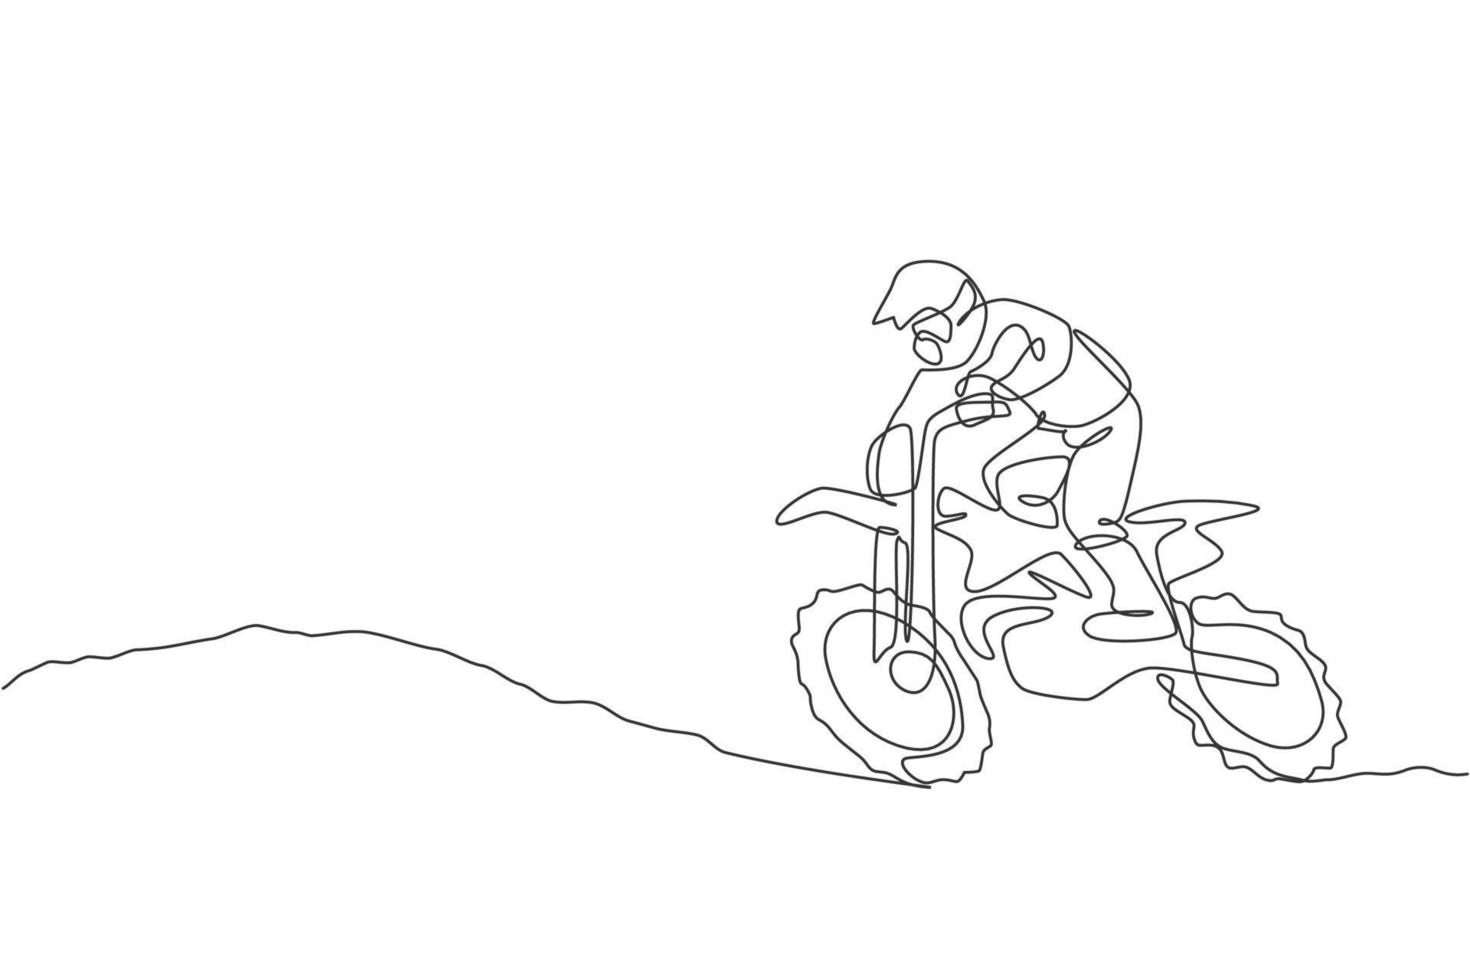 um único desenho de linha do jovem piloto de motocross sobe a colina no solo na ilustração gráfica de vetor de pista de corrida. conceito de esporte radical. design moderno de desenho de linha contínua para banner de evento de corrida de motocross